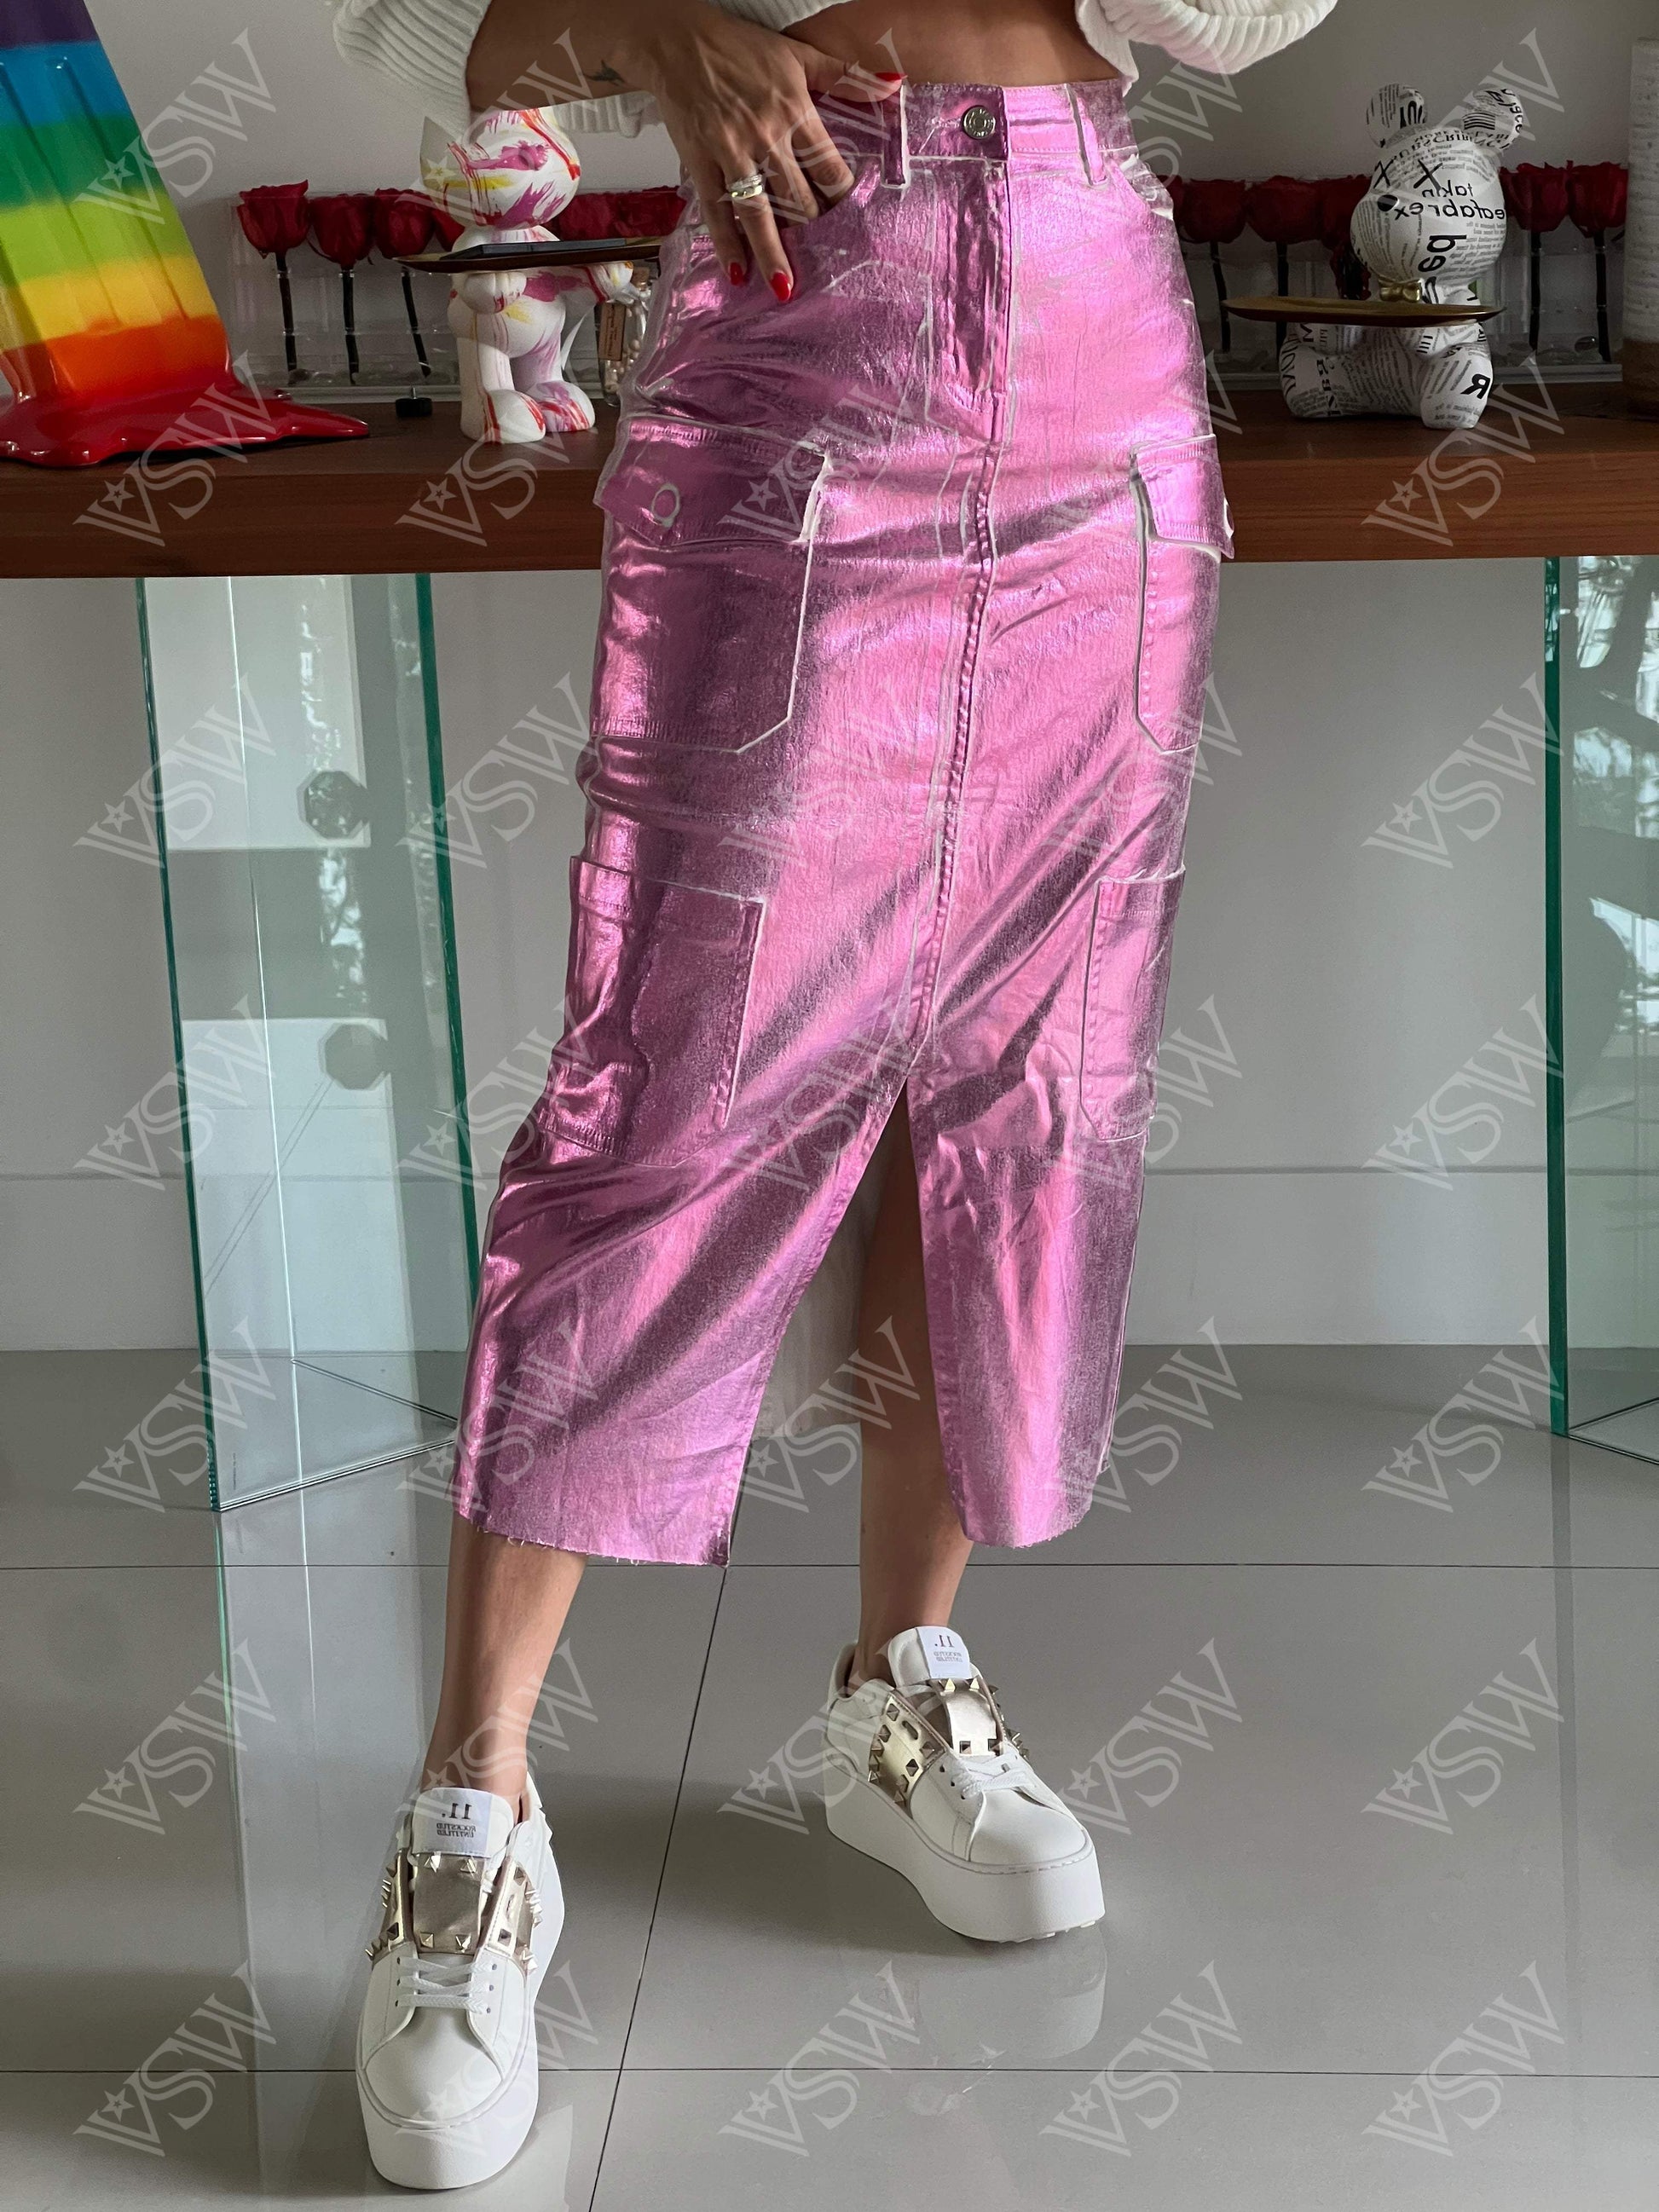 Skirt Meta Rainbow - Skirt from [store] by LA - women skirt